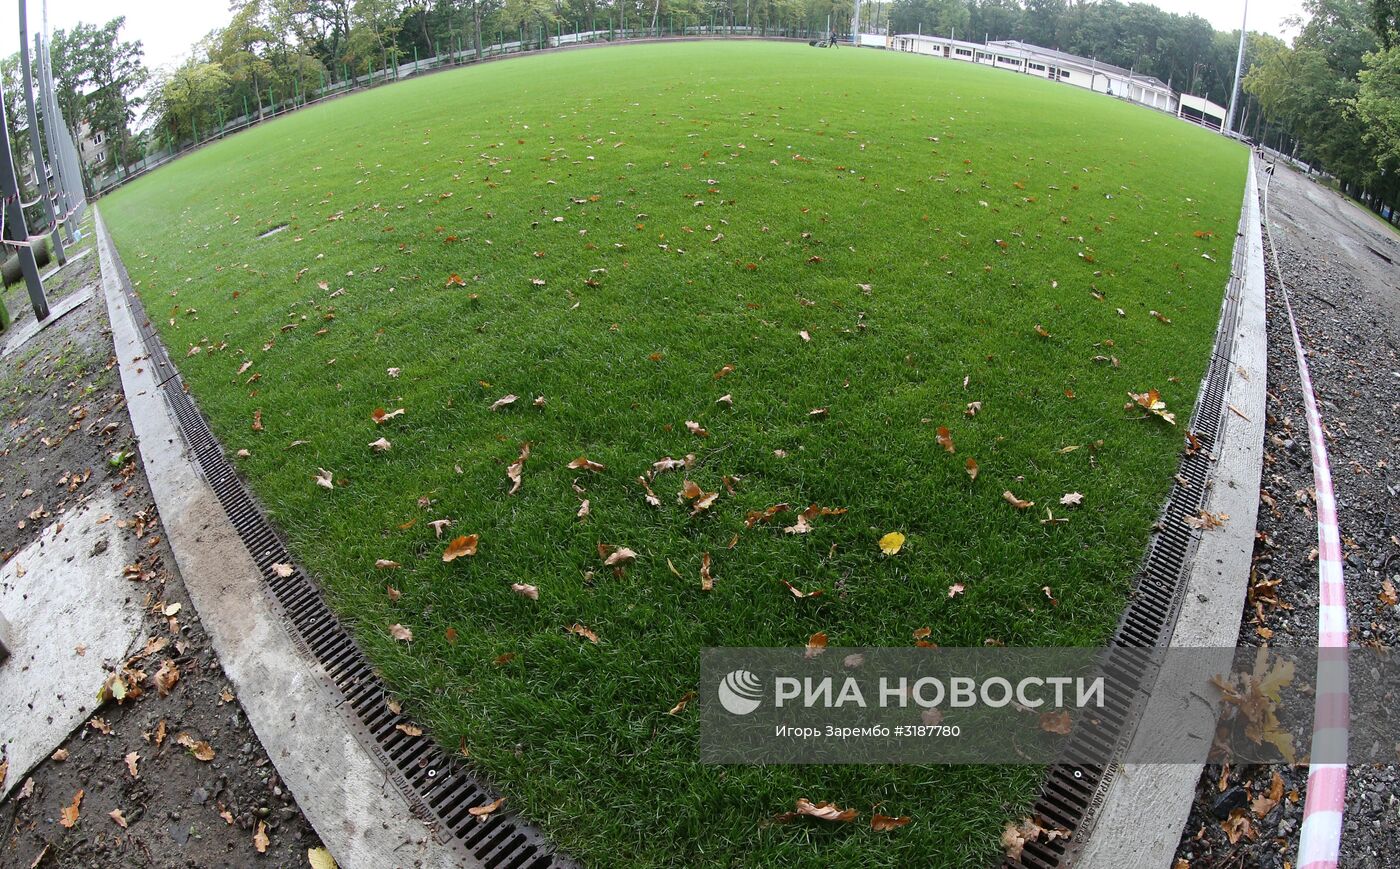 Тренировочная база для команд-участниц ЧМ-2018 по футболу в Калининграде